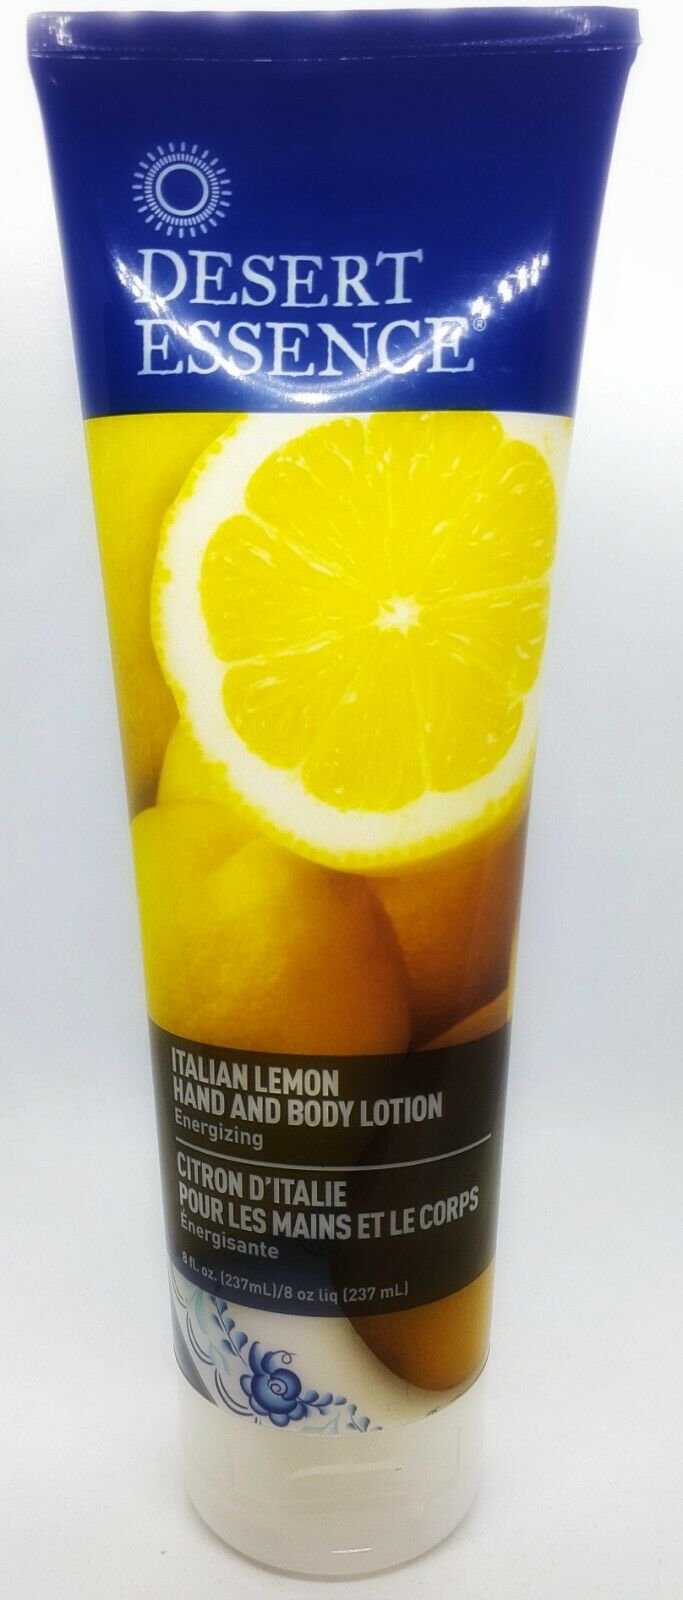 Desert Essence Italian Lemon Hand & Body Lotion - 8 Fl Ounce - Energizing